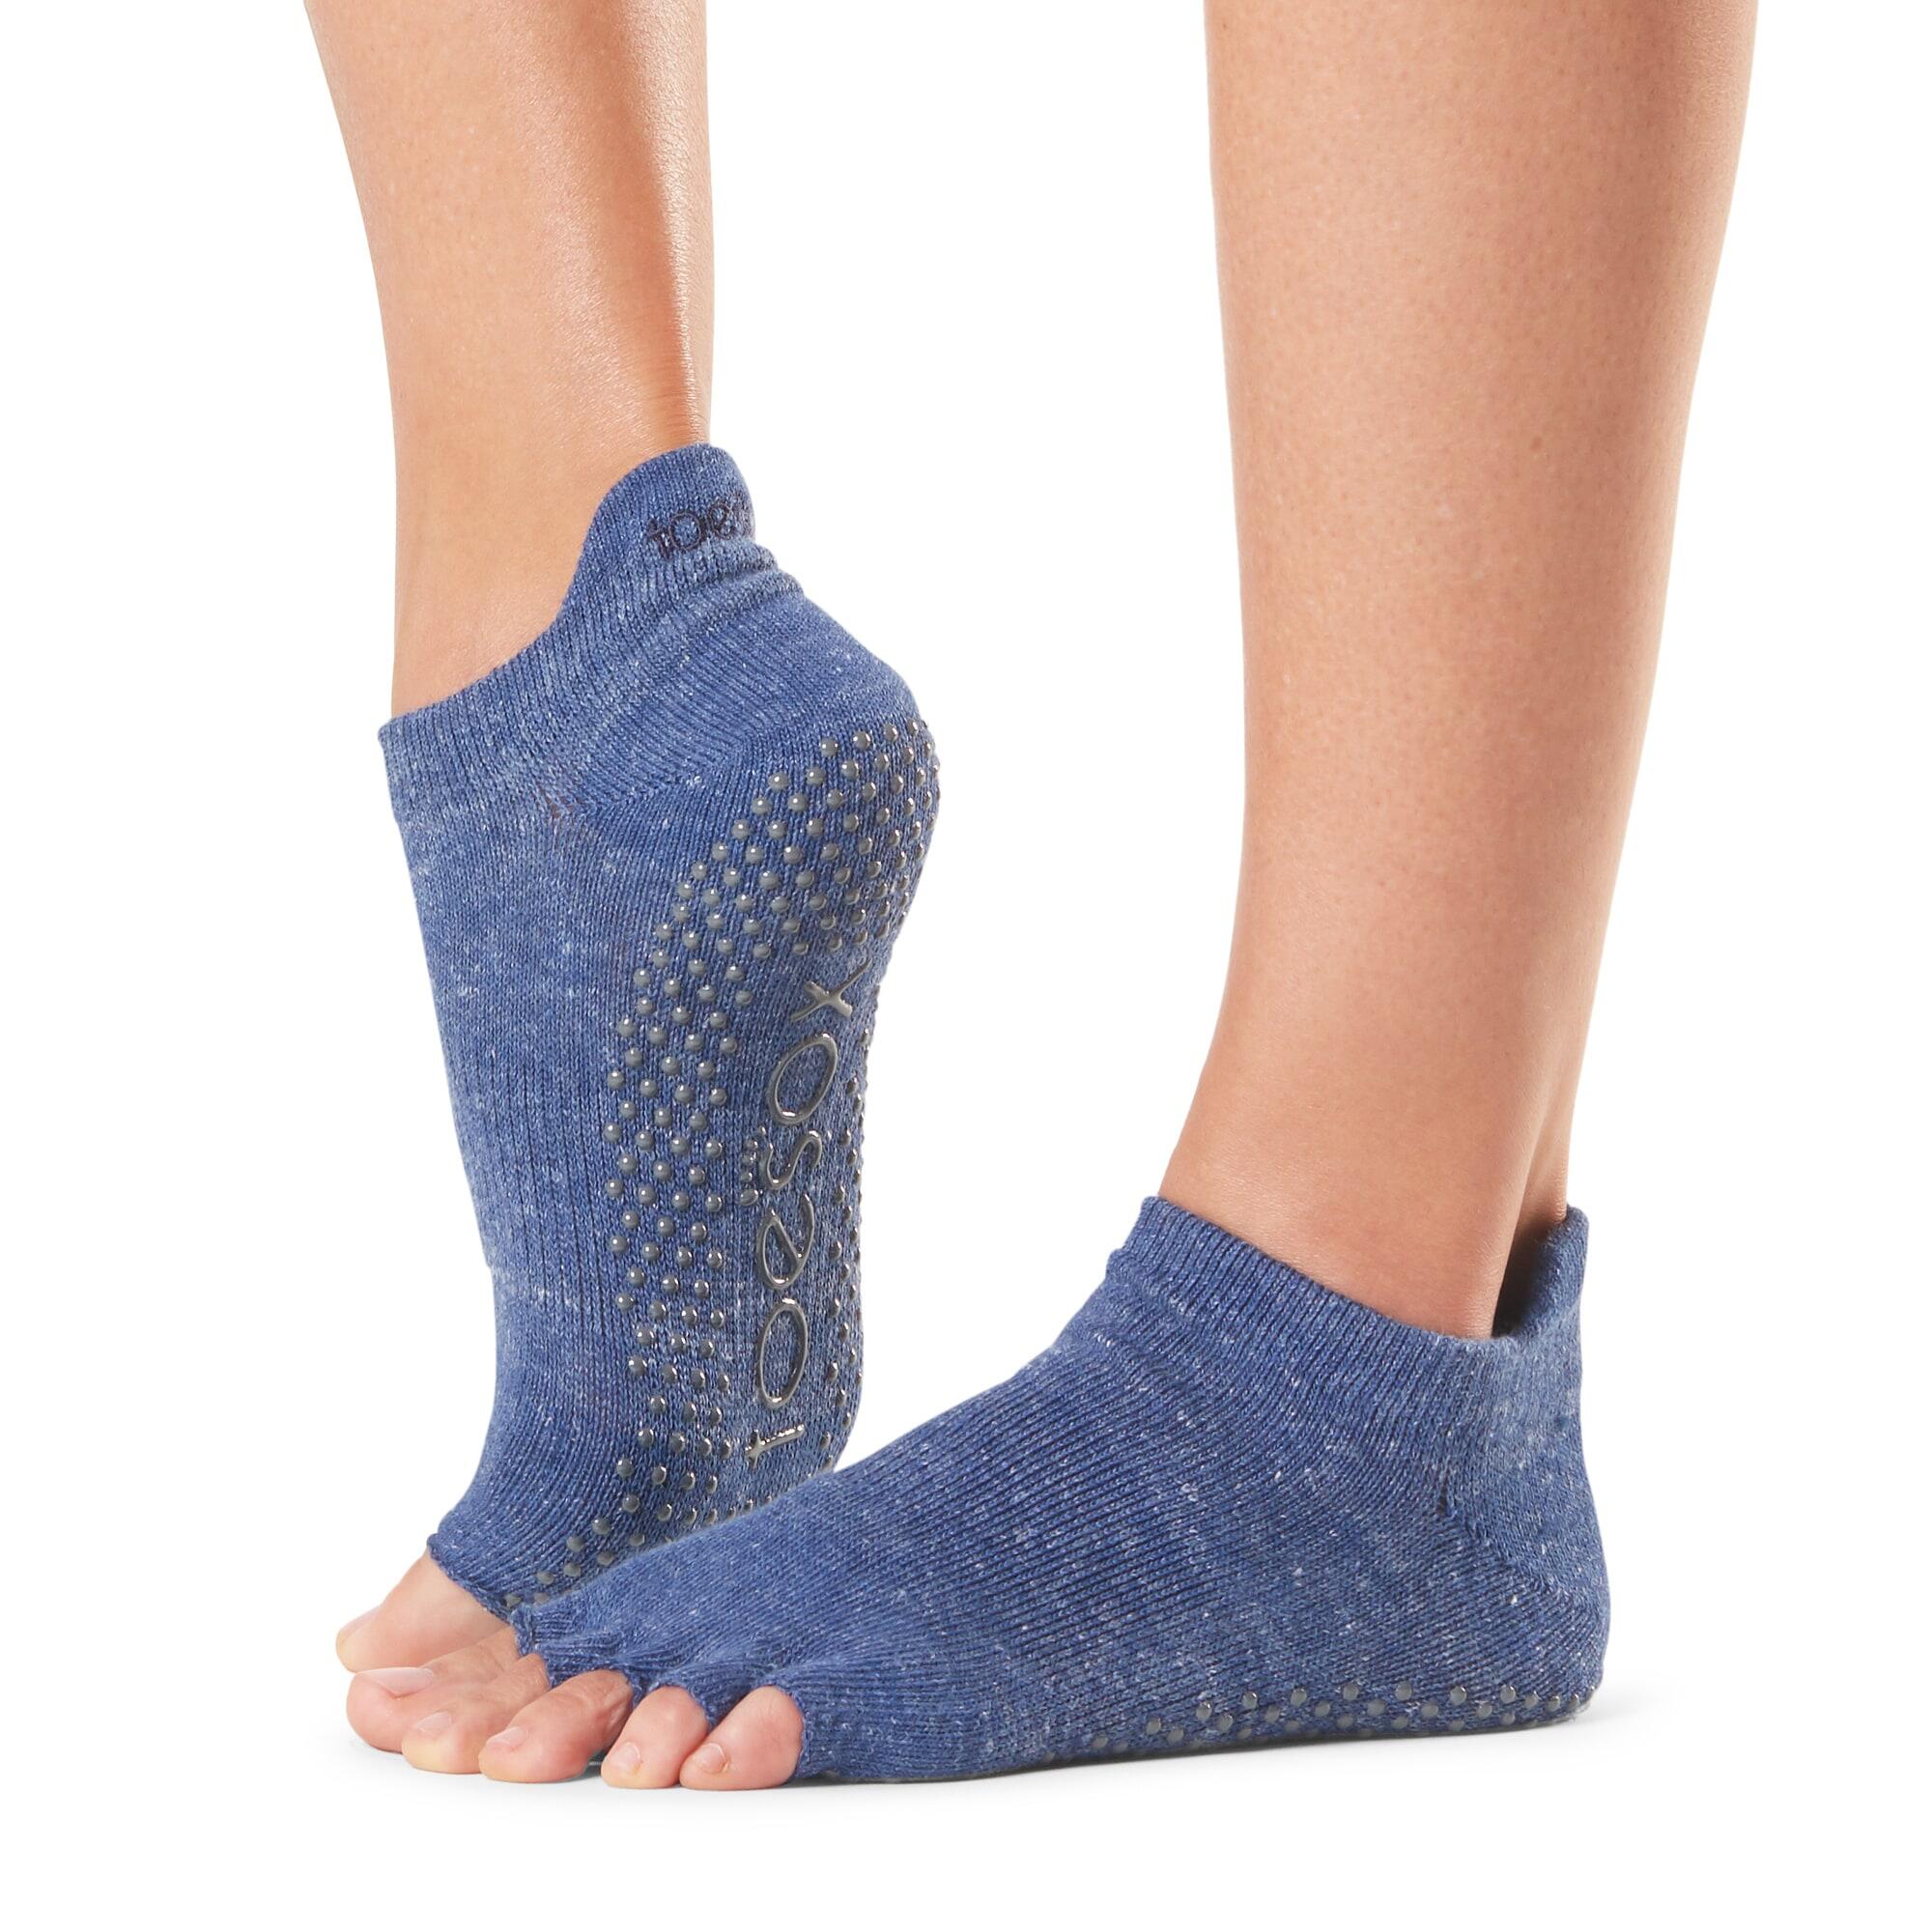 FITNESS-MAD Womens/Ladies Half Toe Socks (Navy Blue)